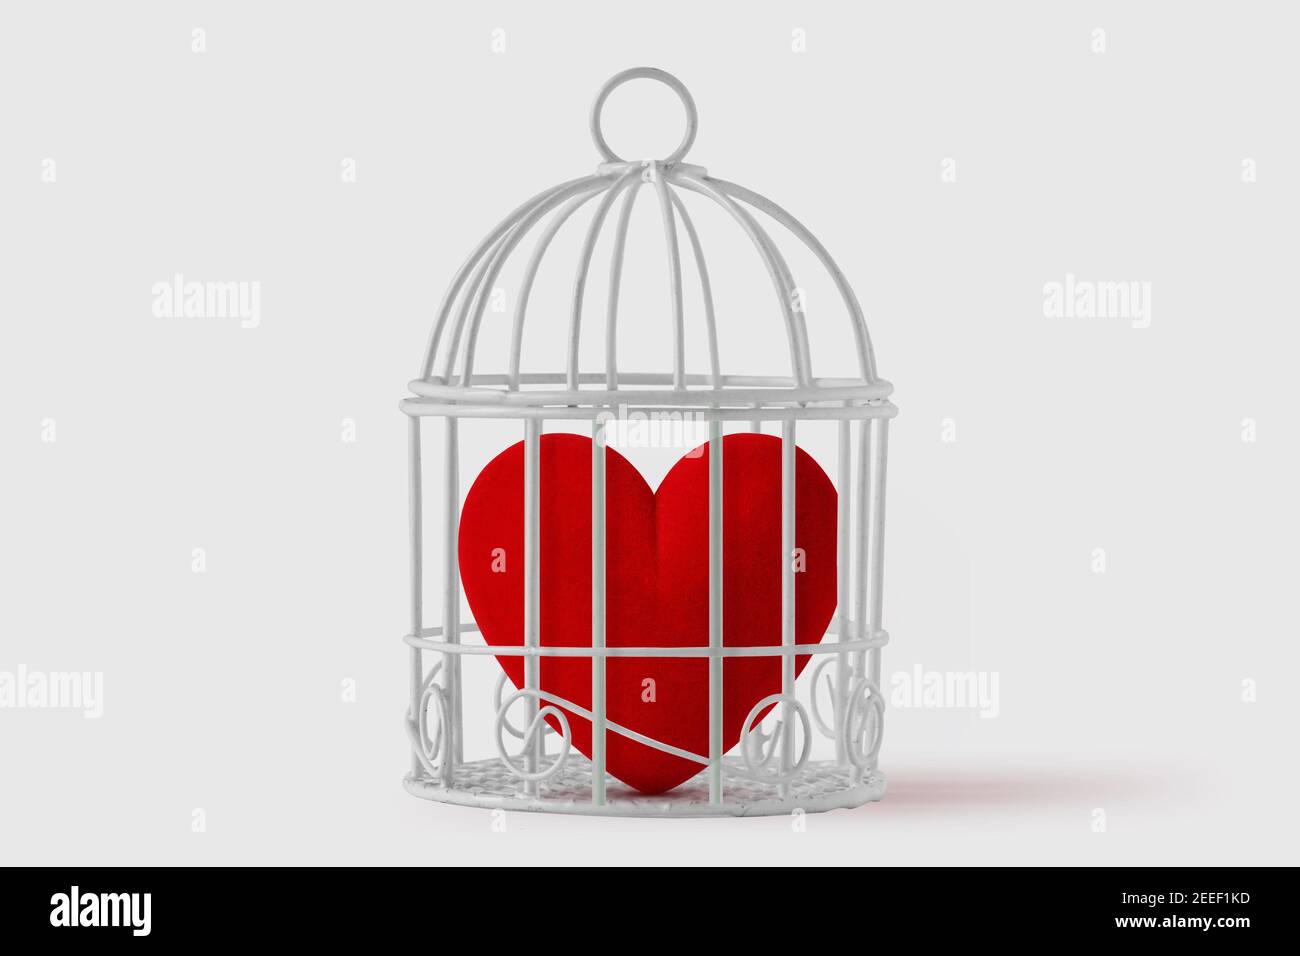 Herz im Vogelkäfig auf weißem Hintergrund - Konzept Liebe und Freiheit Stockfoto